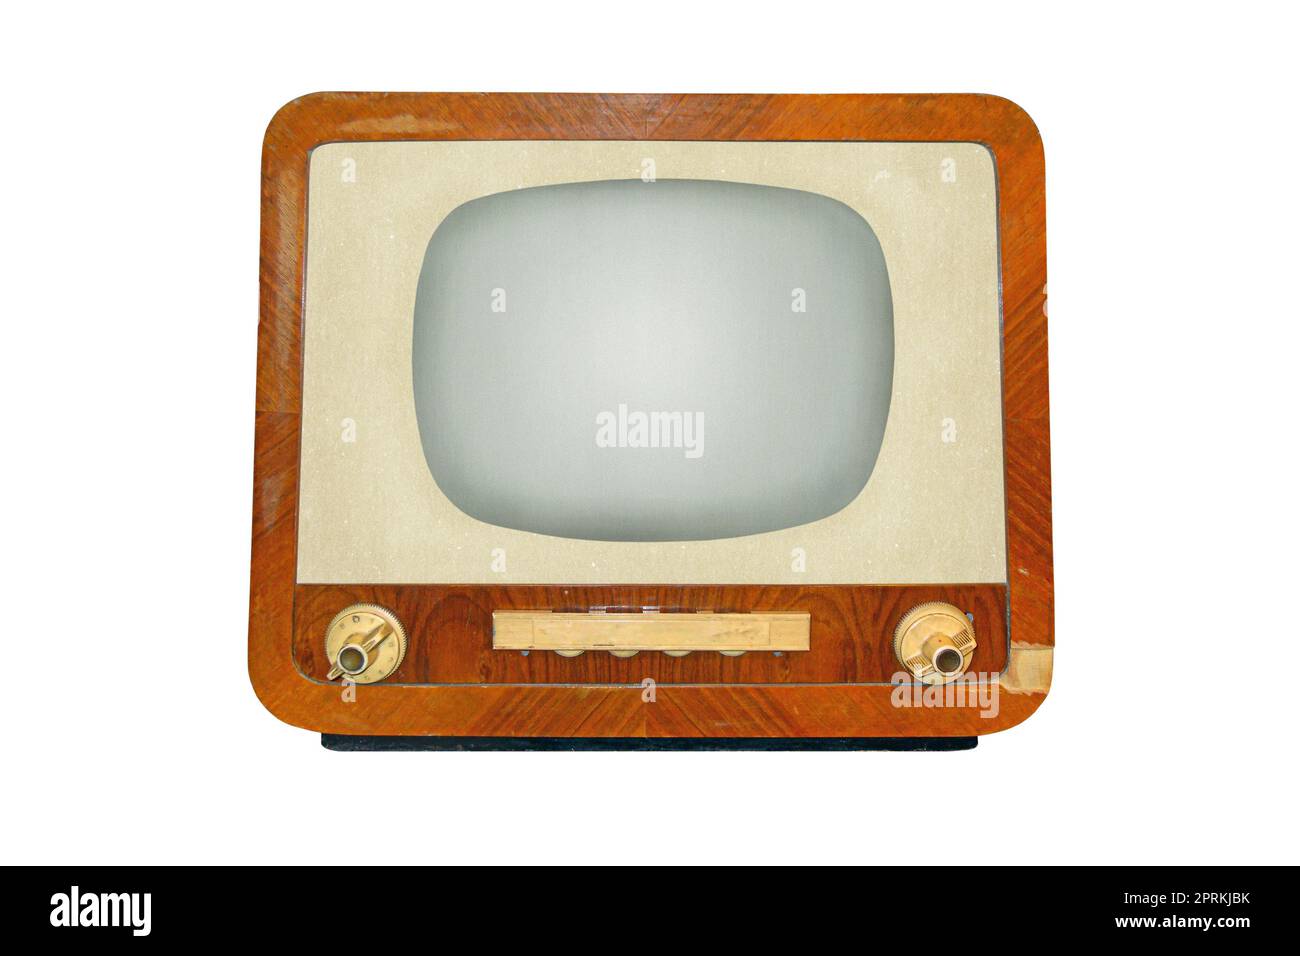 Vecchio ricevitore televisivo retro CRT isolato su sfondo bianco, tecnologia TV analogica vintage Foto Stock